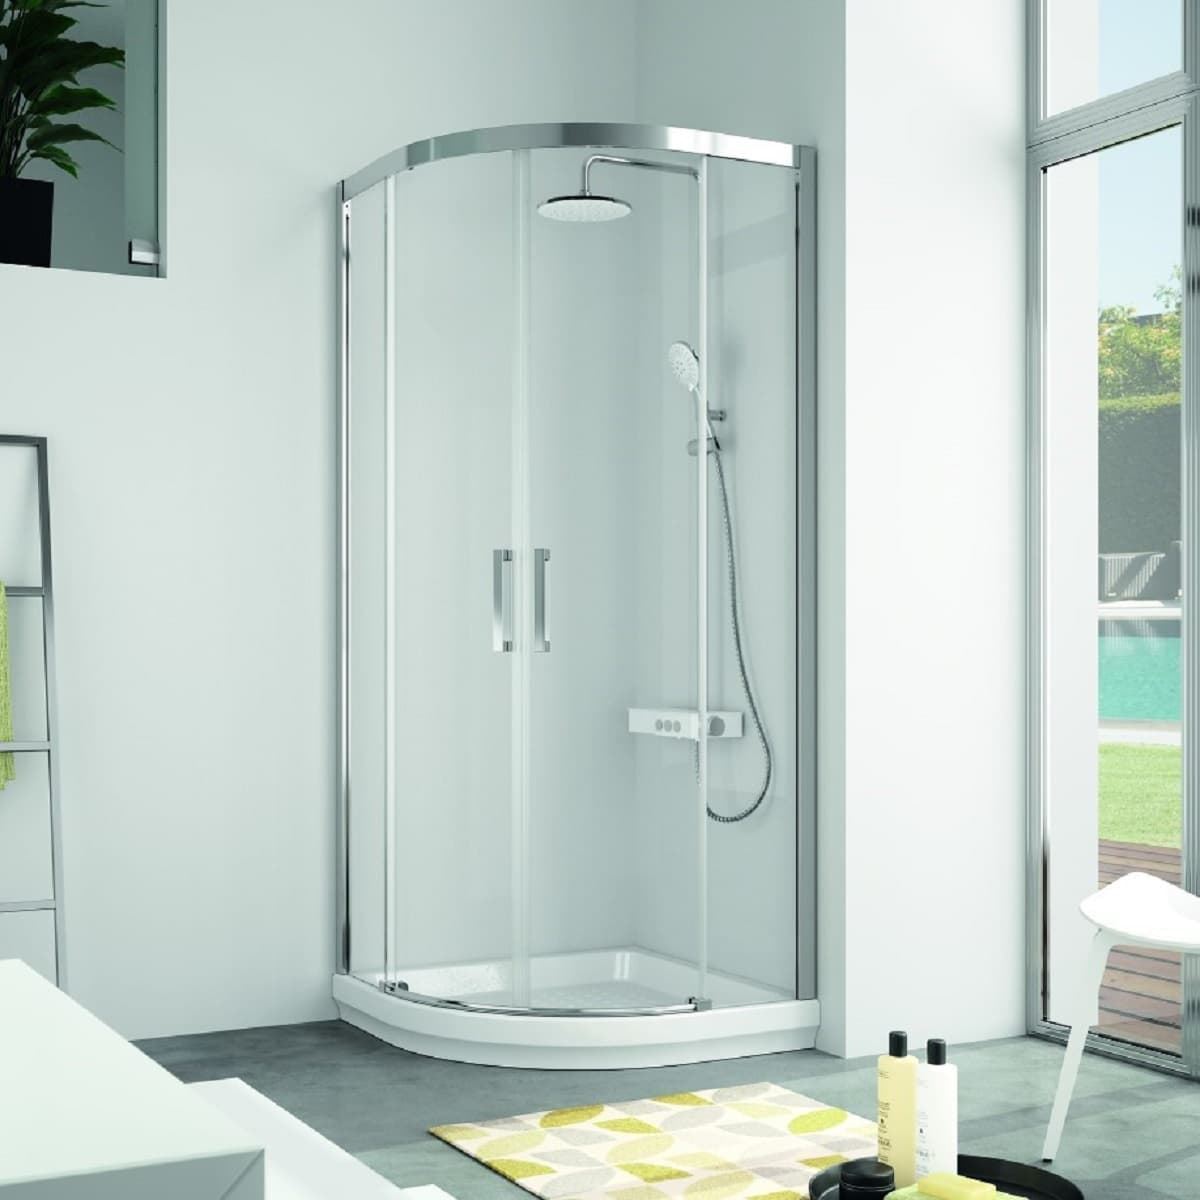 Mampara de ducha semicircular plata brillo y cristal modelo S 400 - Imagen 1